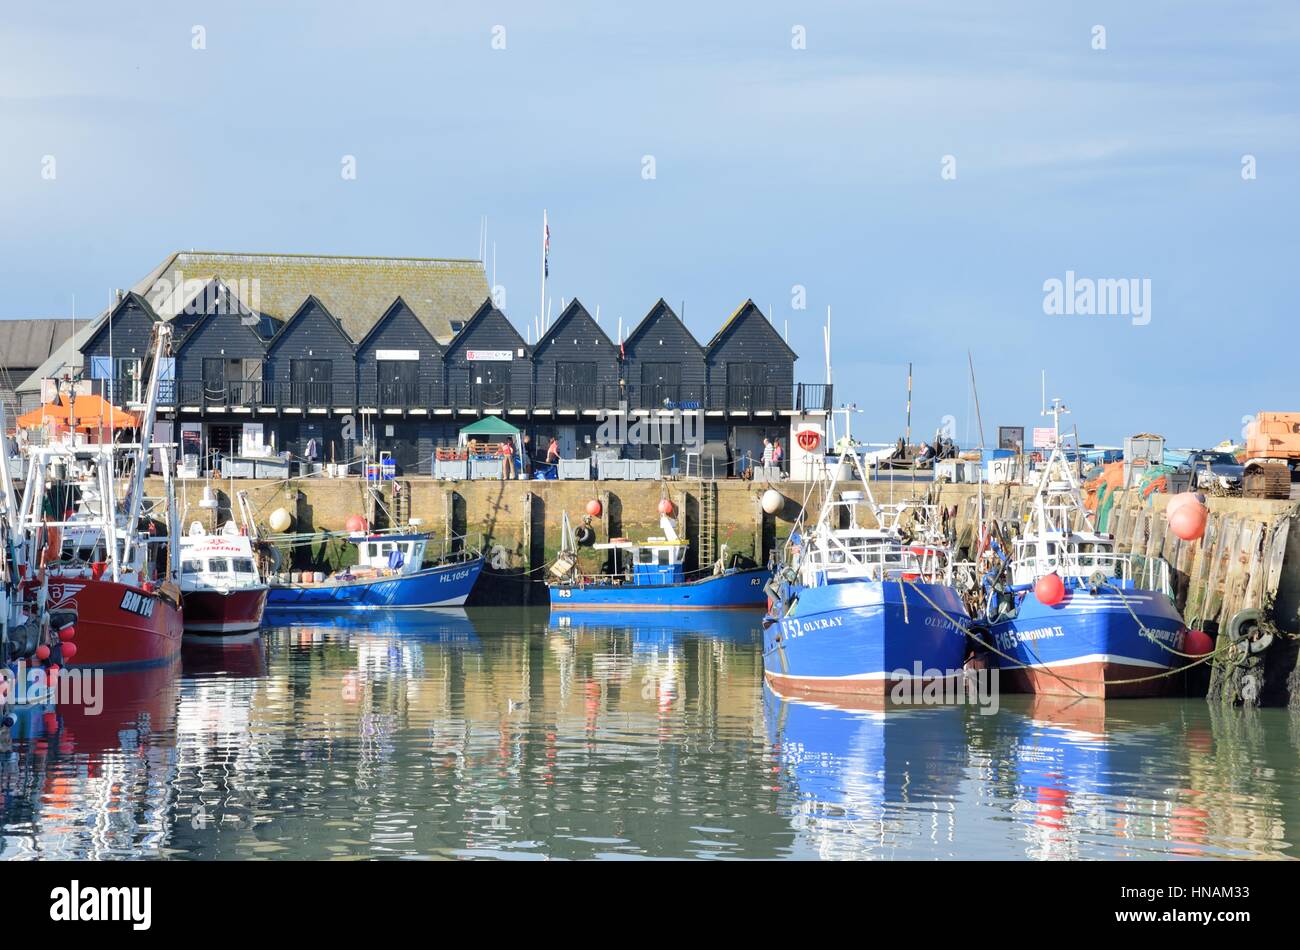 Whitstable, Regno Unito - Otcober 1, 2016: barche da pesca e fishermans capannoni nel porto di Whitstable Foto Stock